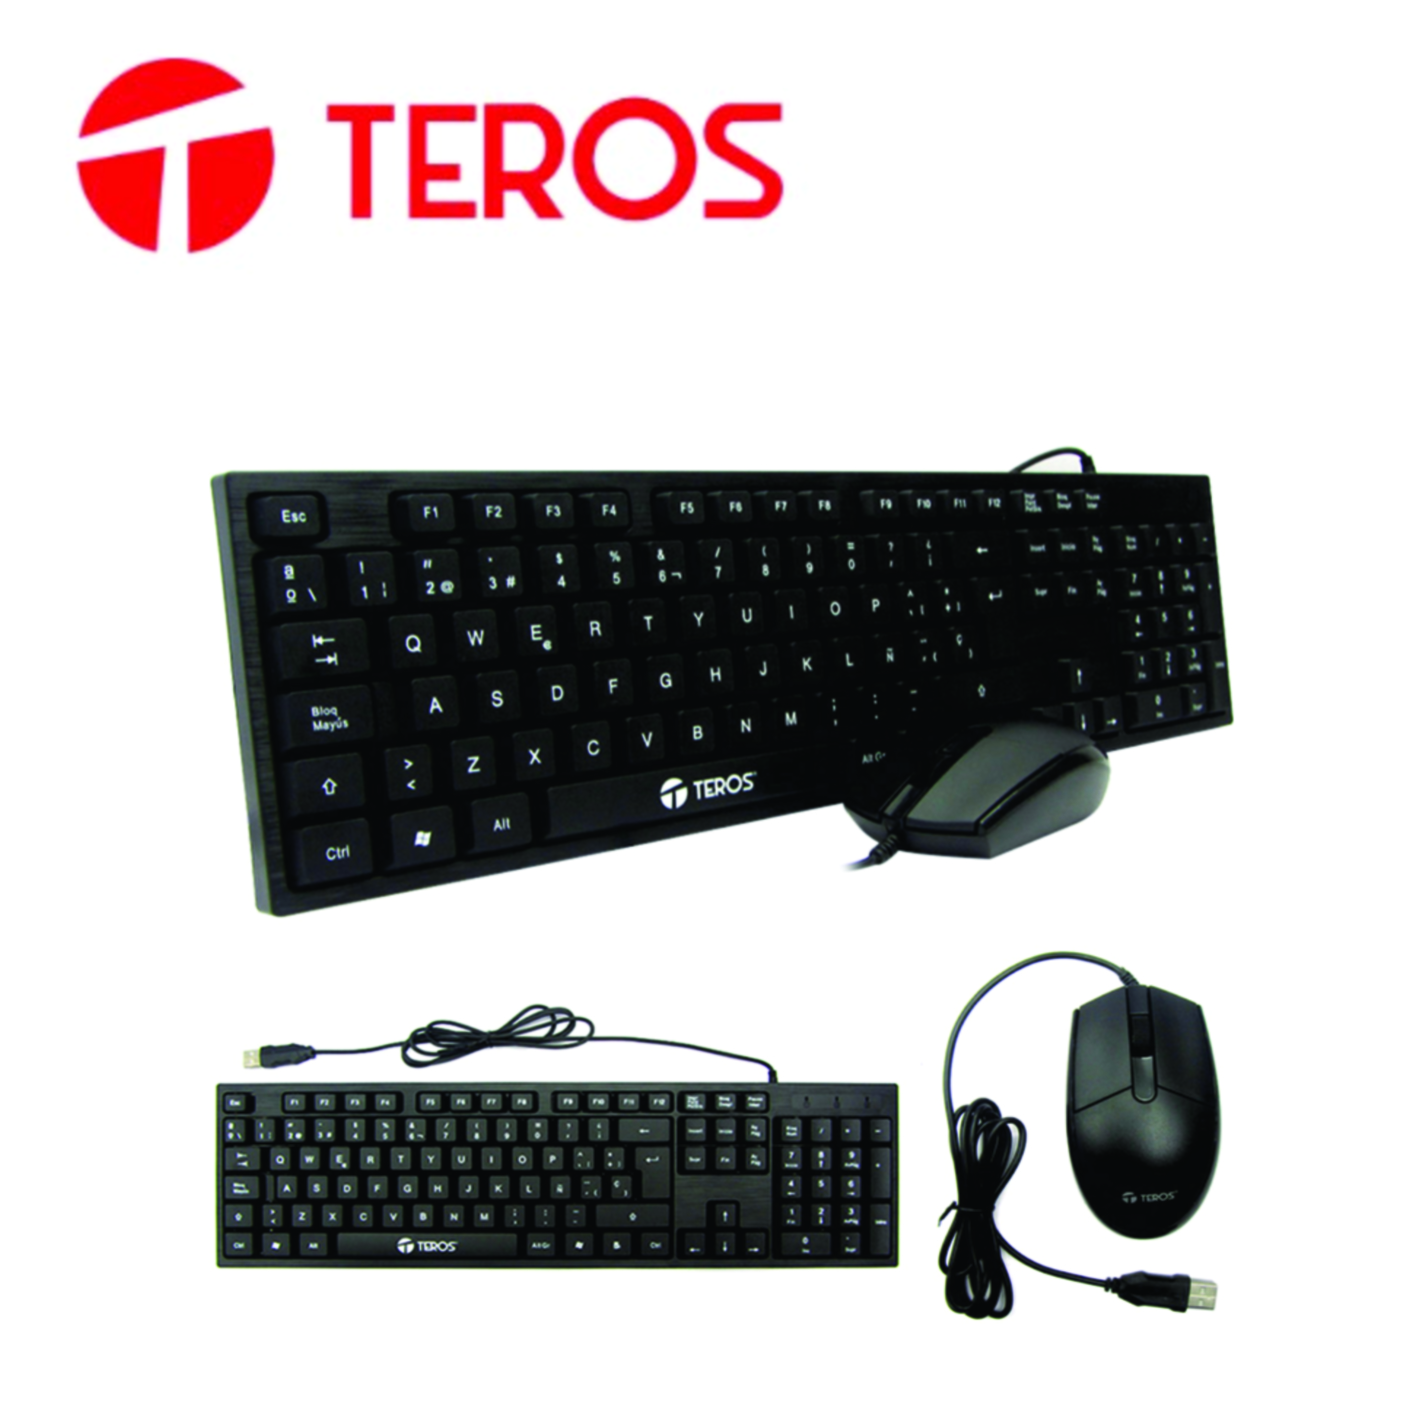 Kit Teclado y Mouse Teros TED8700, USB, acabado elegante, Negro, Español, Óptico.